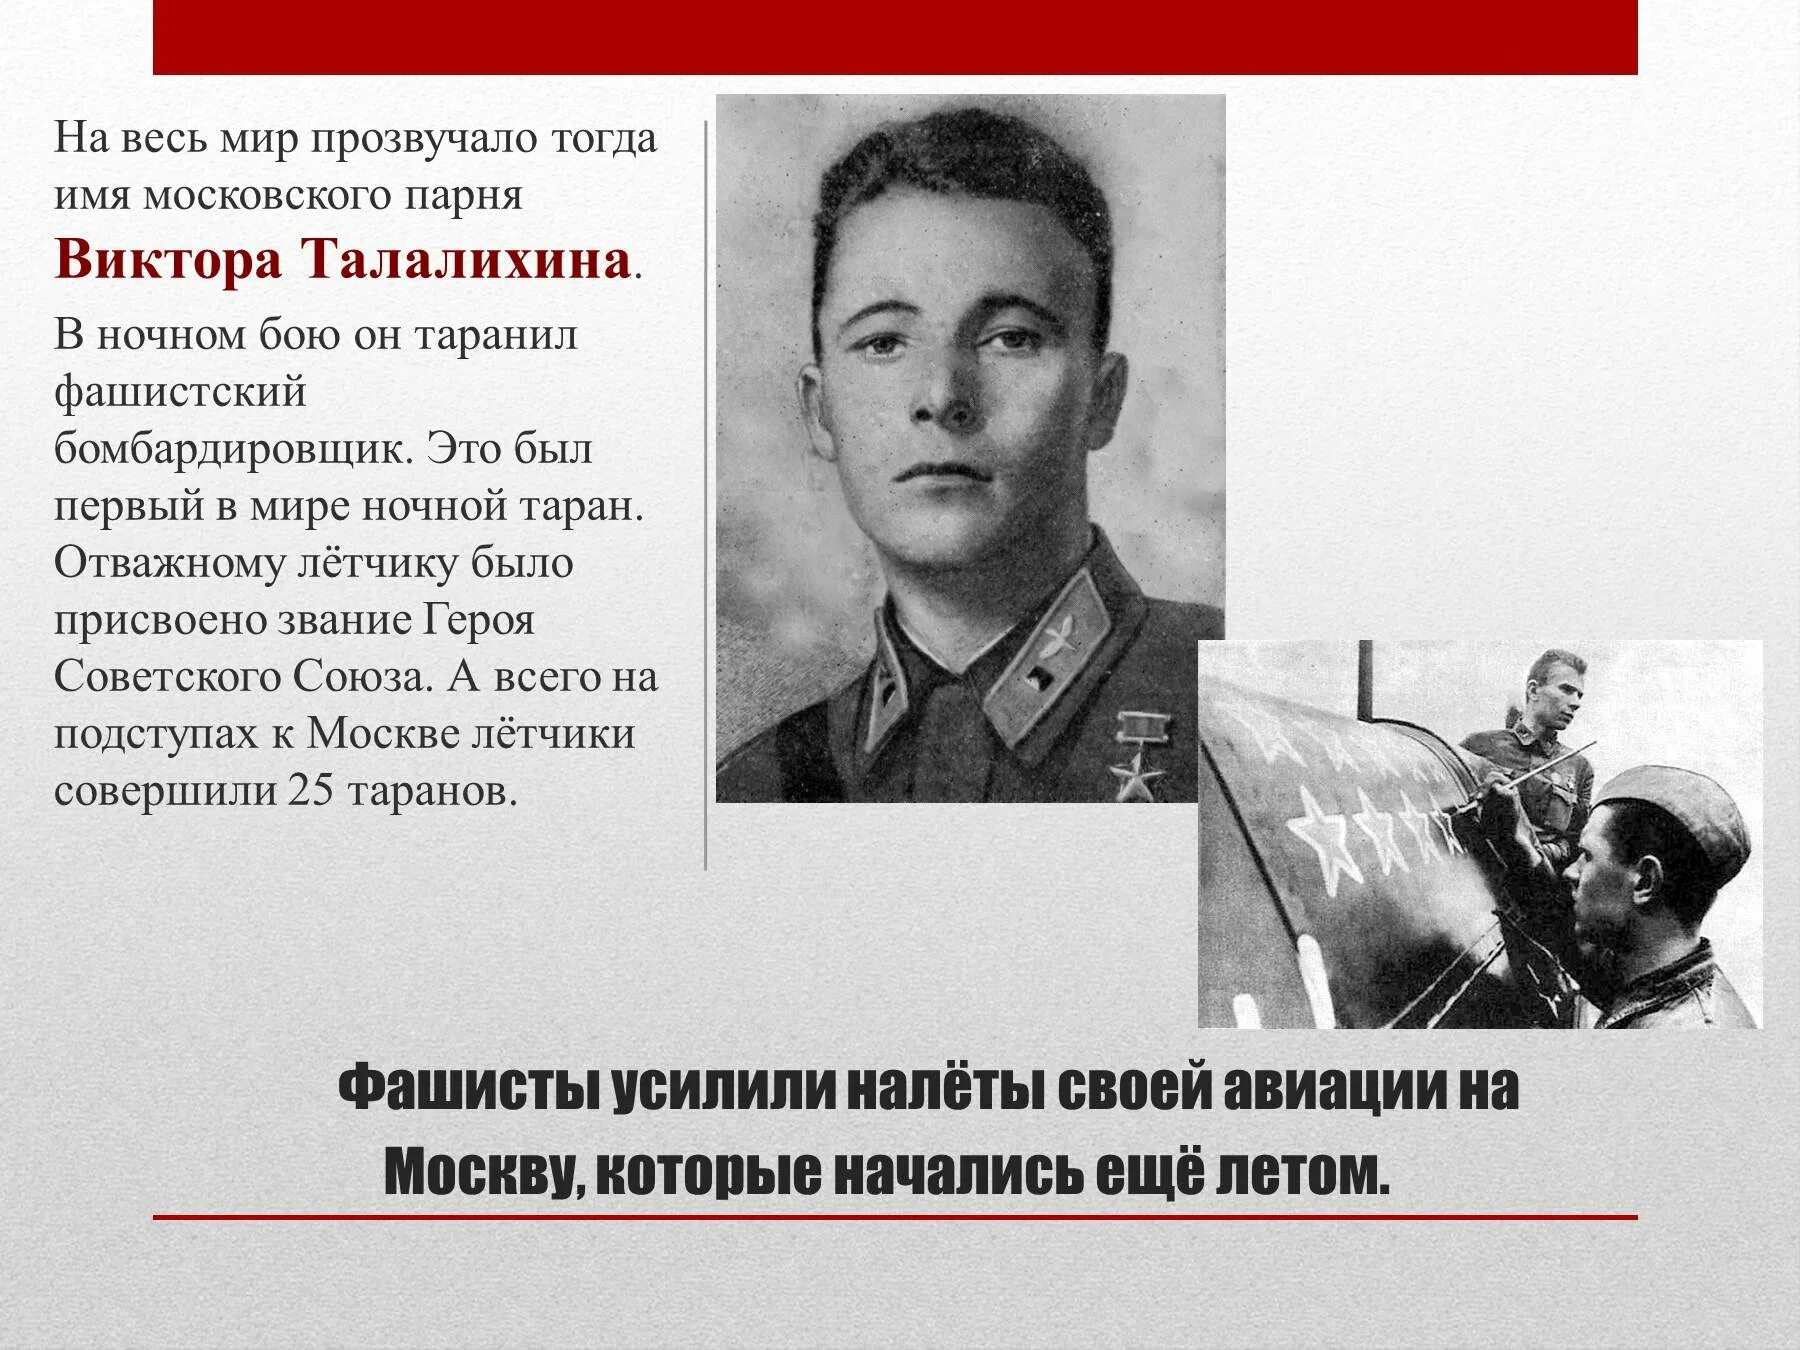 Летчик совершивший первый в истории ночной таран. Талалихин герой советского Союза. Подвиг лётчика Виктора Талалихина. Талалихин совершил первый ночной Таран.